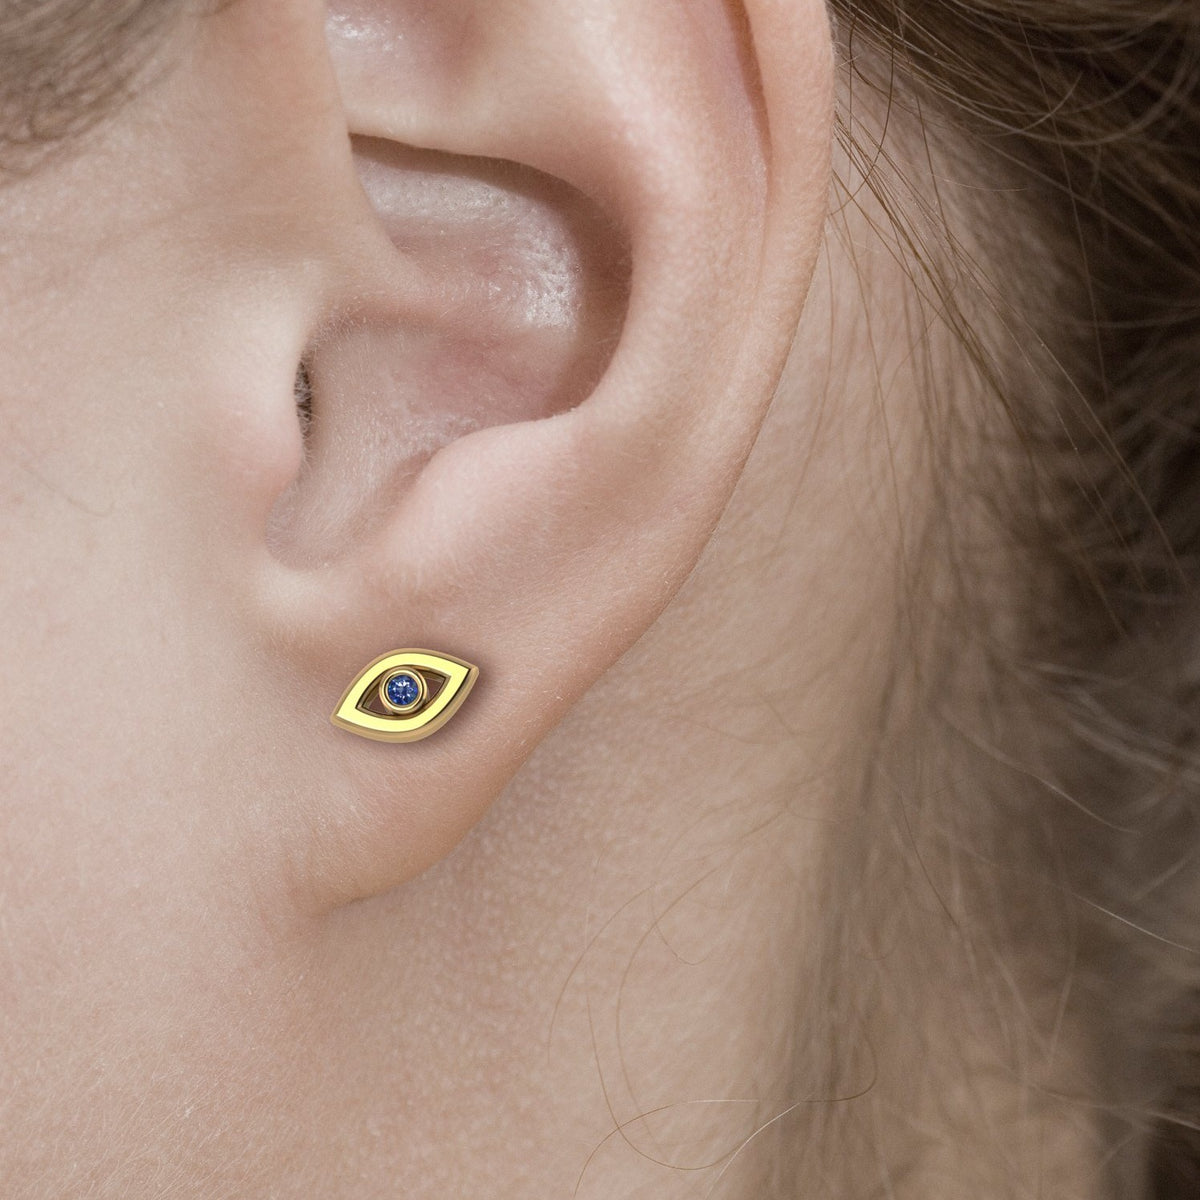 Evil Eye Earrings / Push Back Earrings / 14K Yellow Gold Earrings